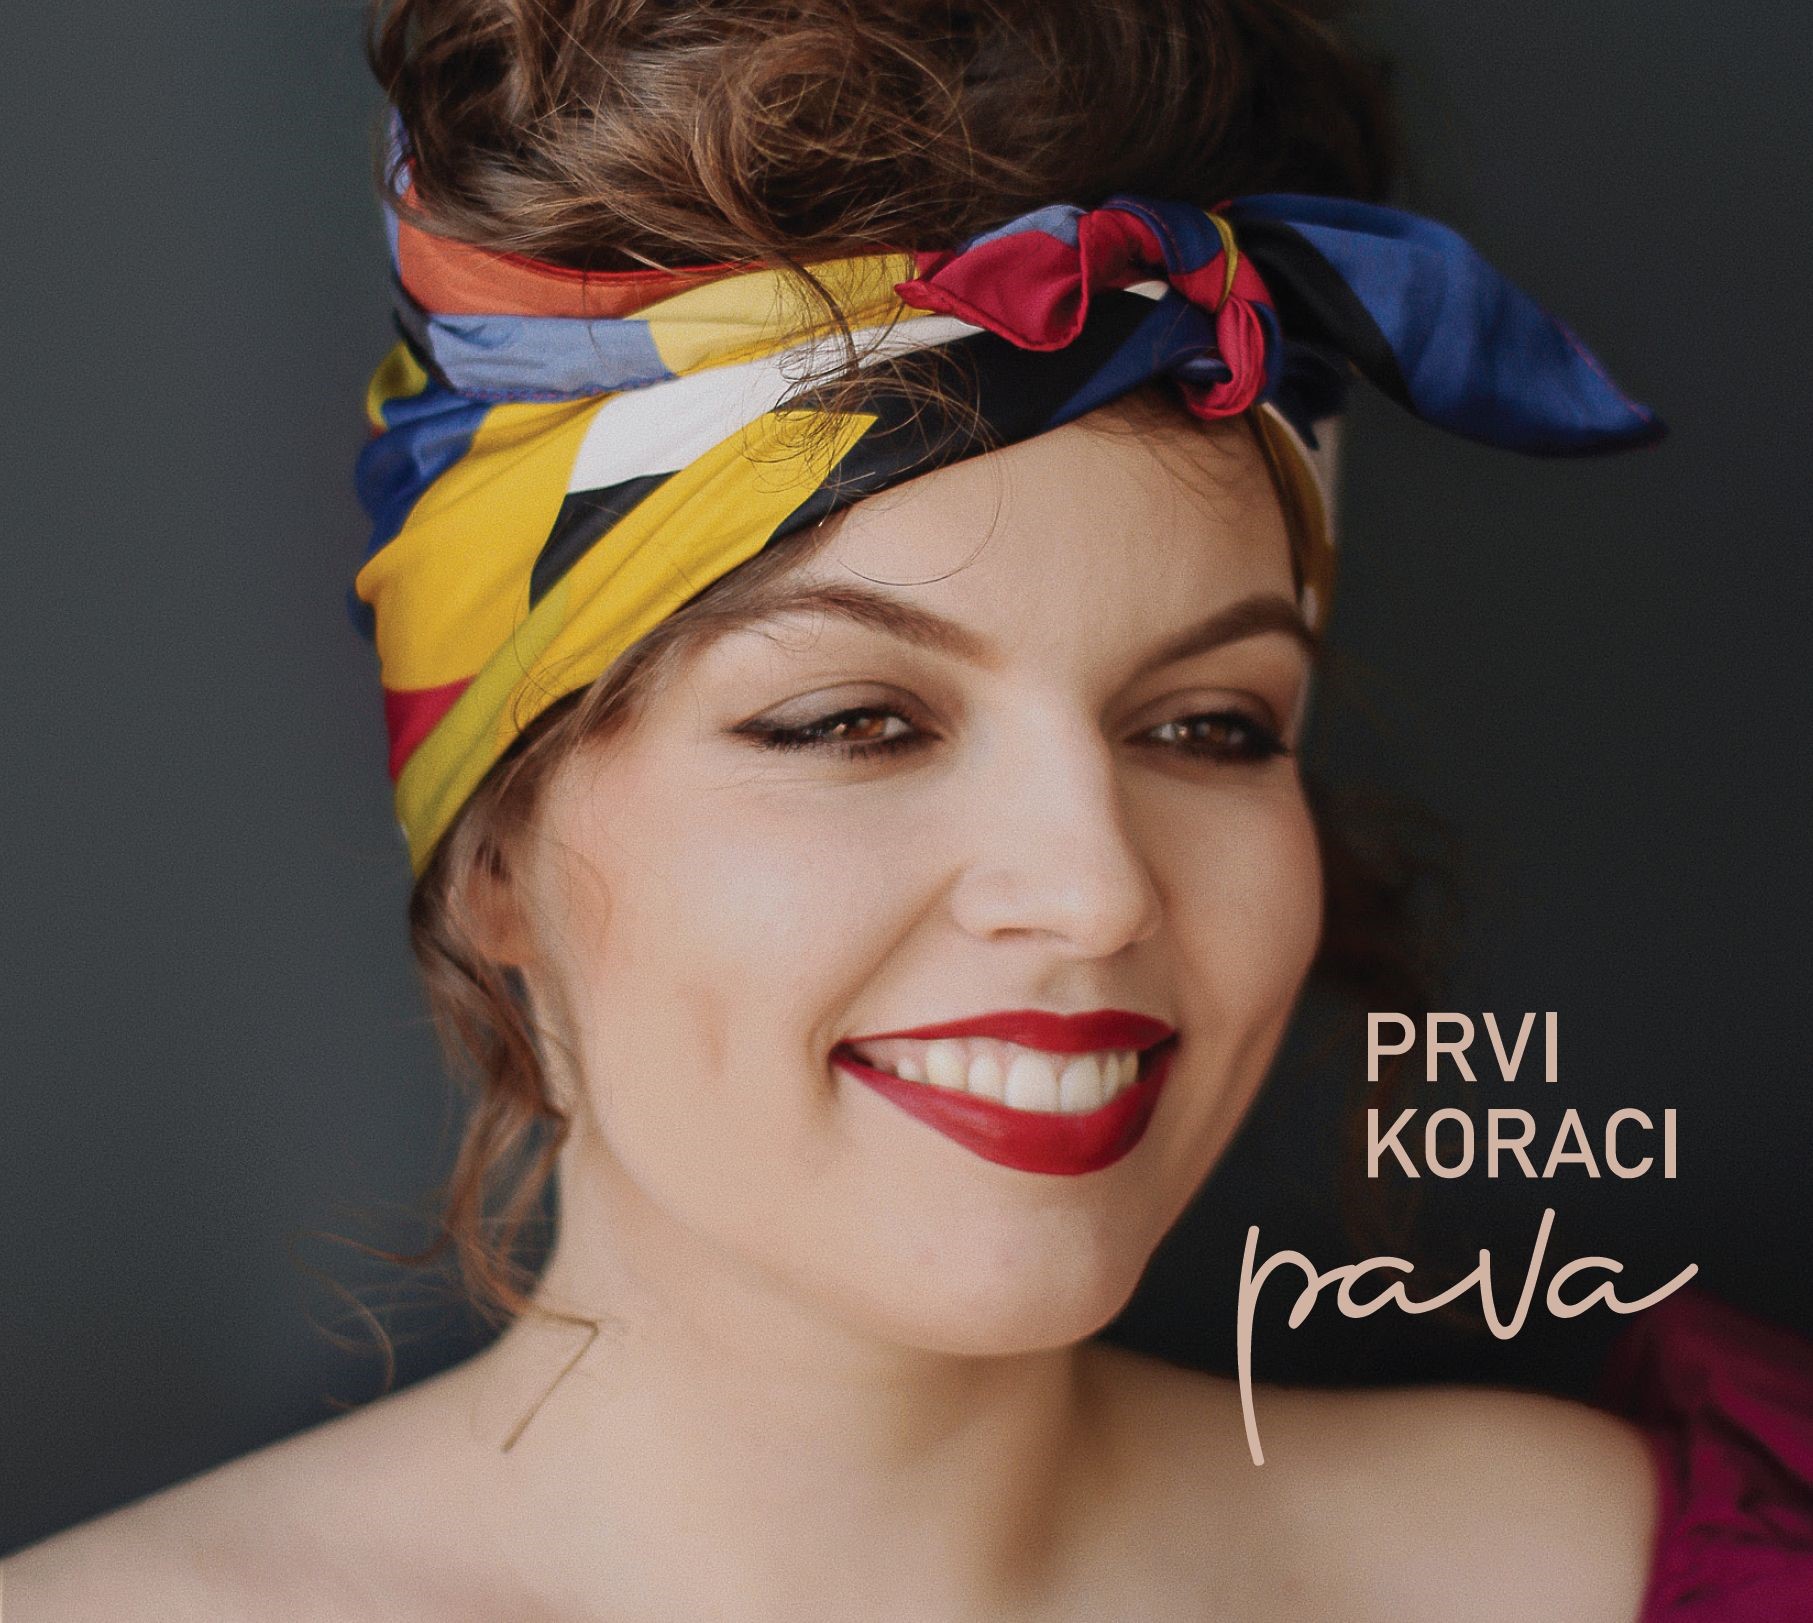 Pavini “Prvi koraci” najprodavaniji album u Hrvatskoj!